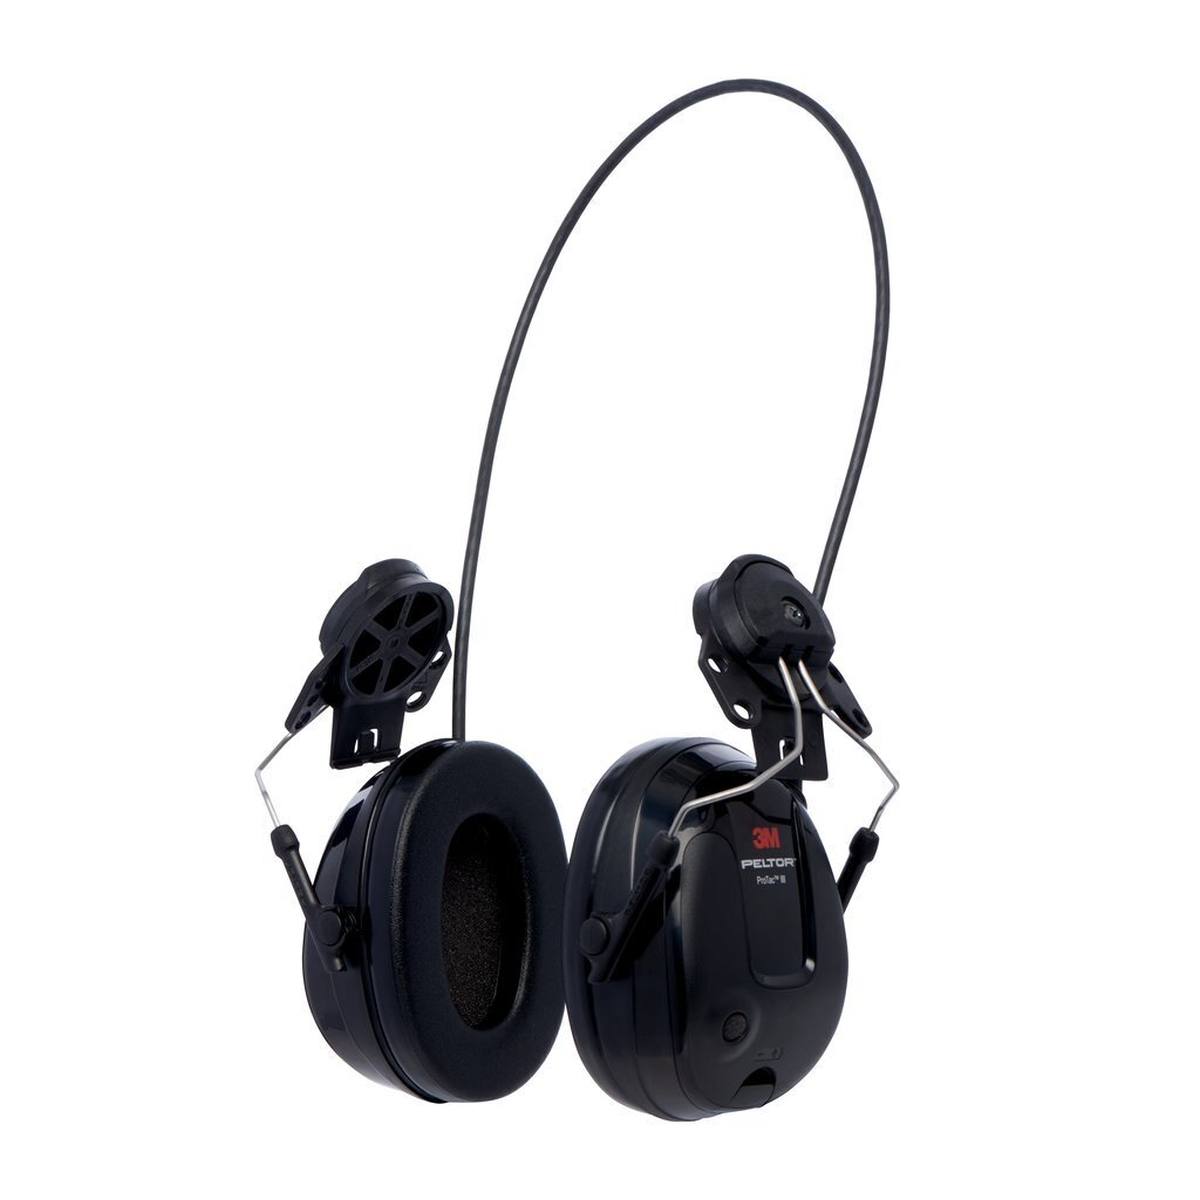 3M Peltor ProTac III Slim Gehörschutz-Headset, schwarz, Helmversion, mit aktiver, pegelabhängiger Dämmtechnologie zum Wahrnehmen von Umgebungsgeräuschen, SNR = 25 dB, schwarz